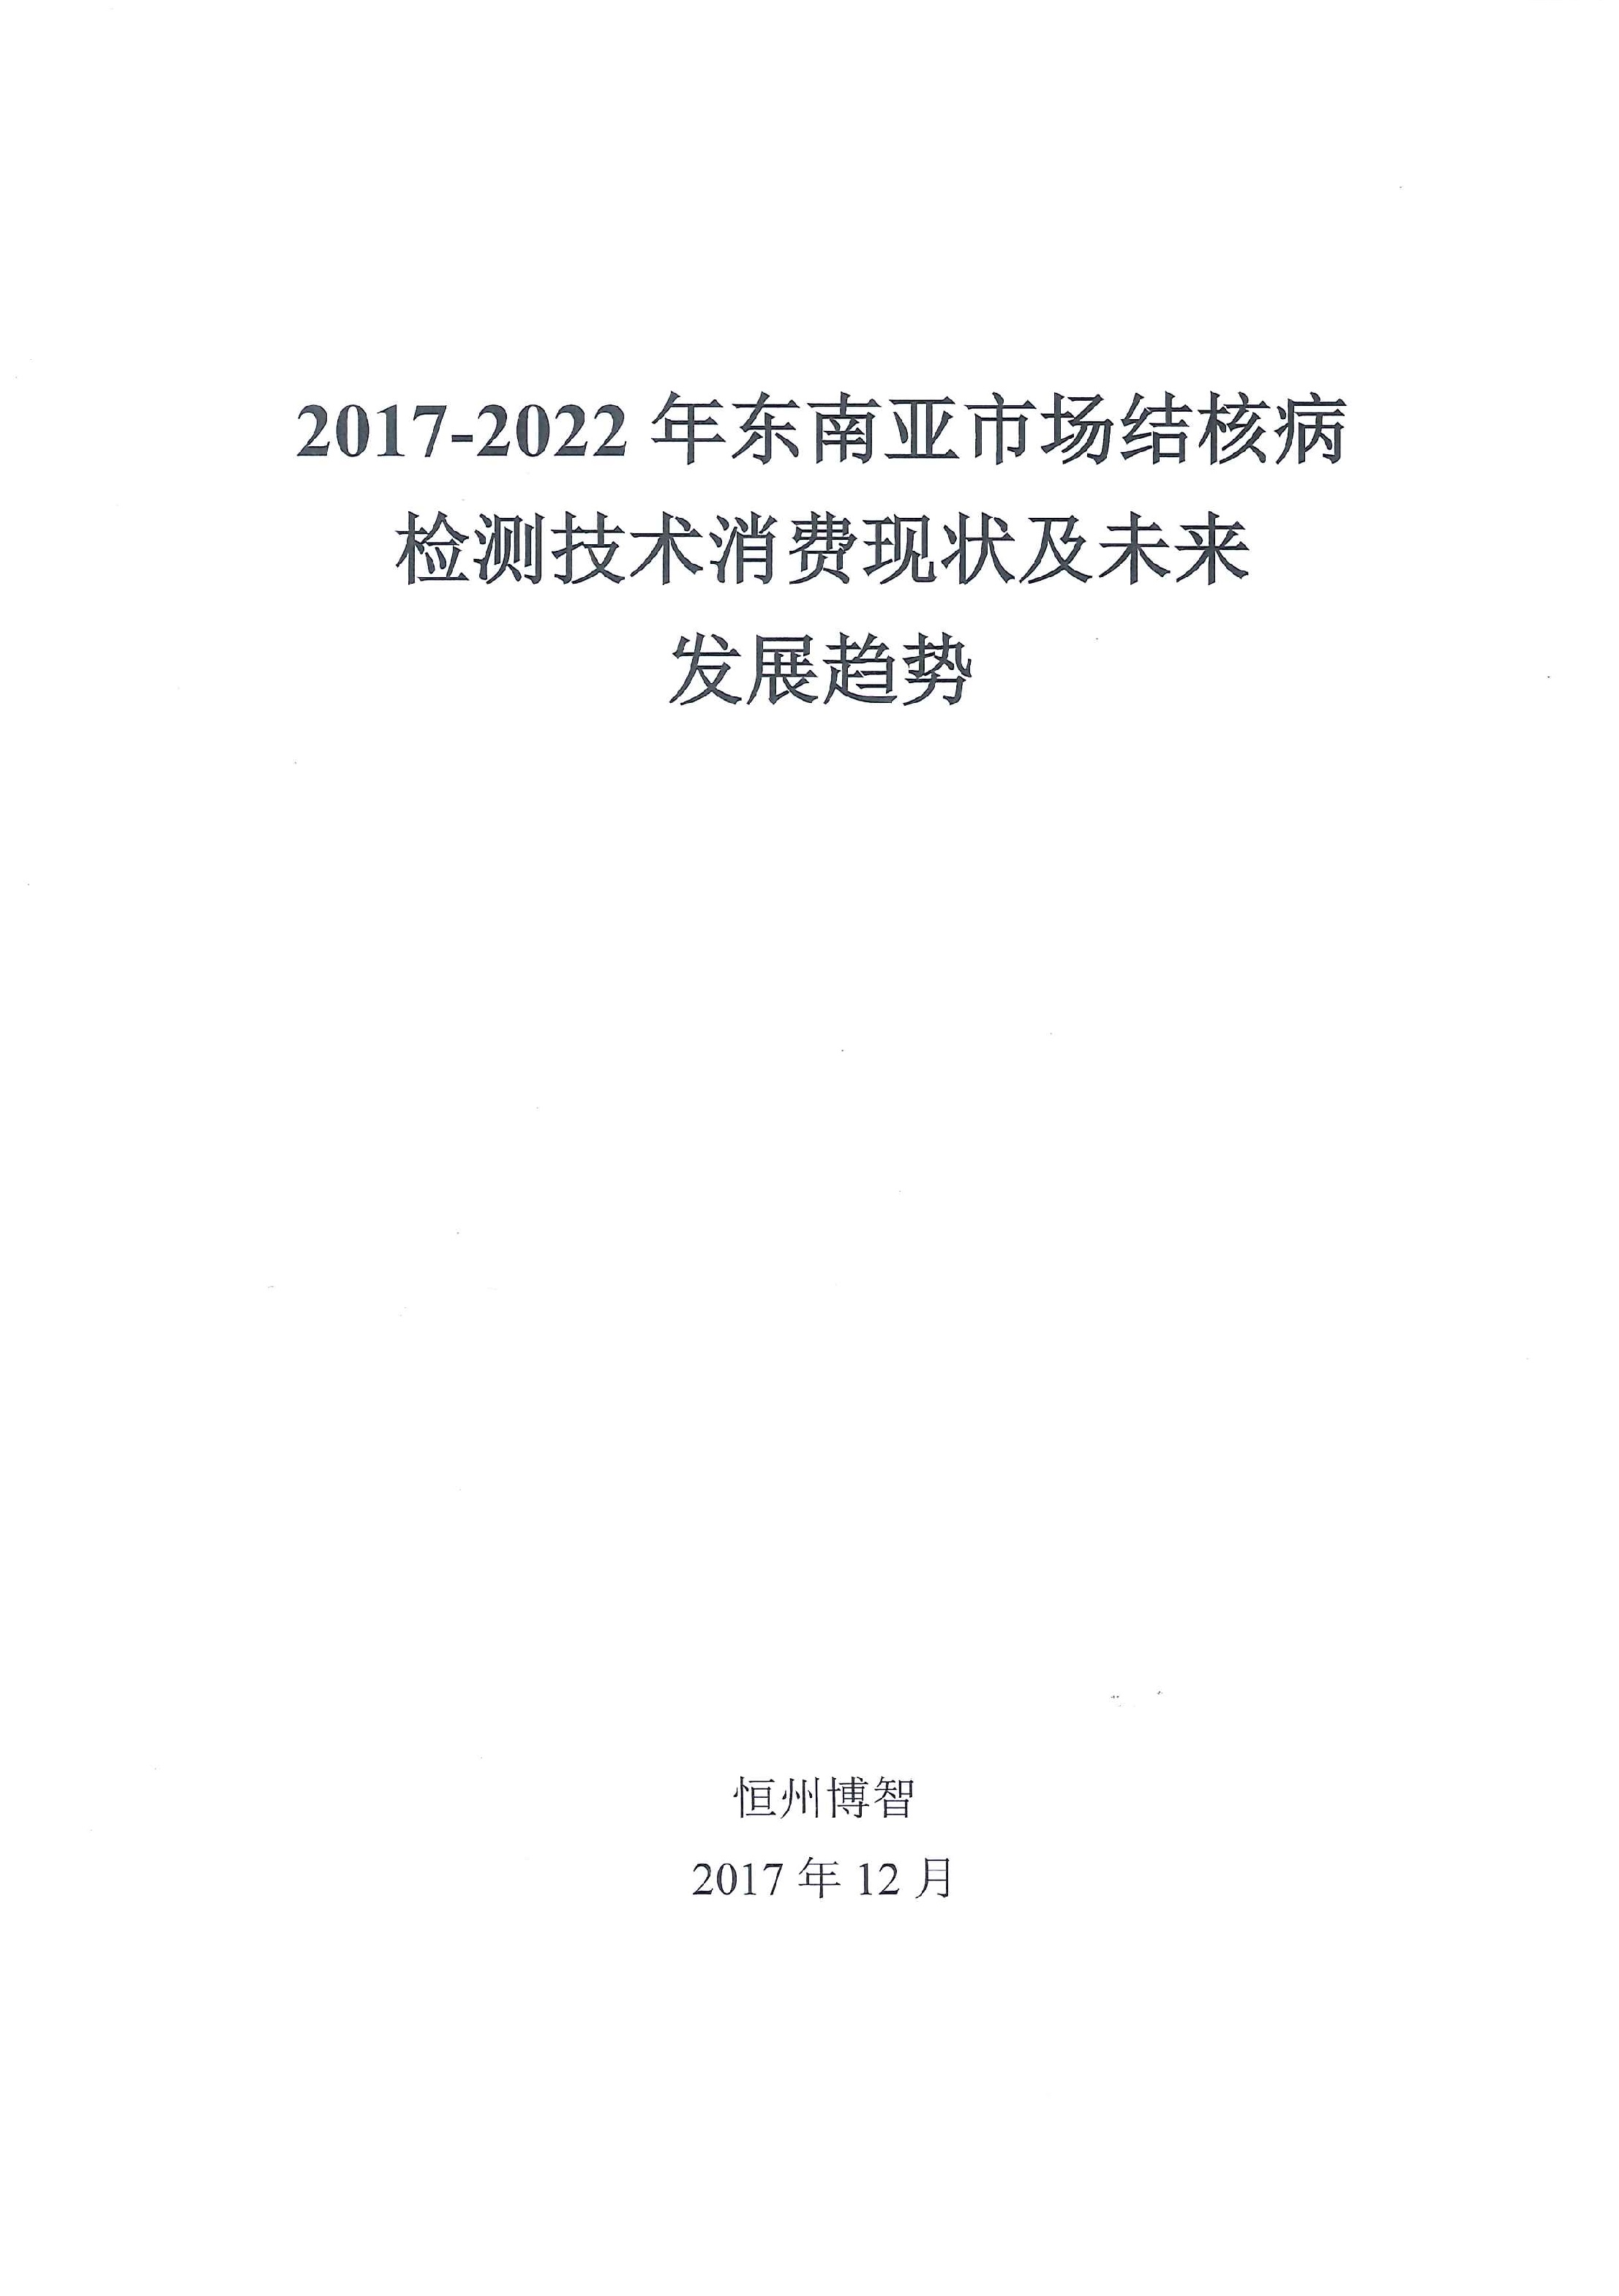 2017-2022年东南亚市场结核病检测技术消费现状及未来发展趋势 [電子書]